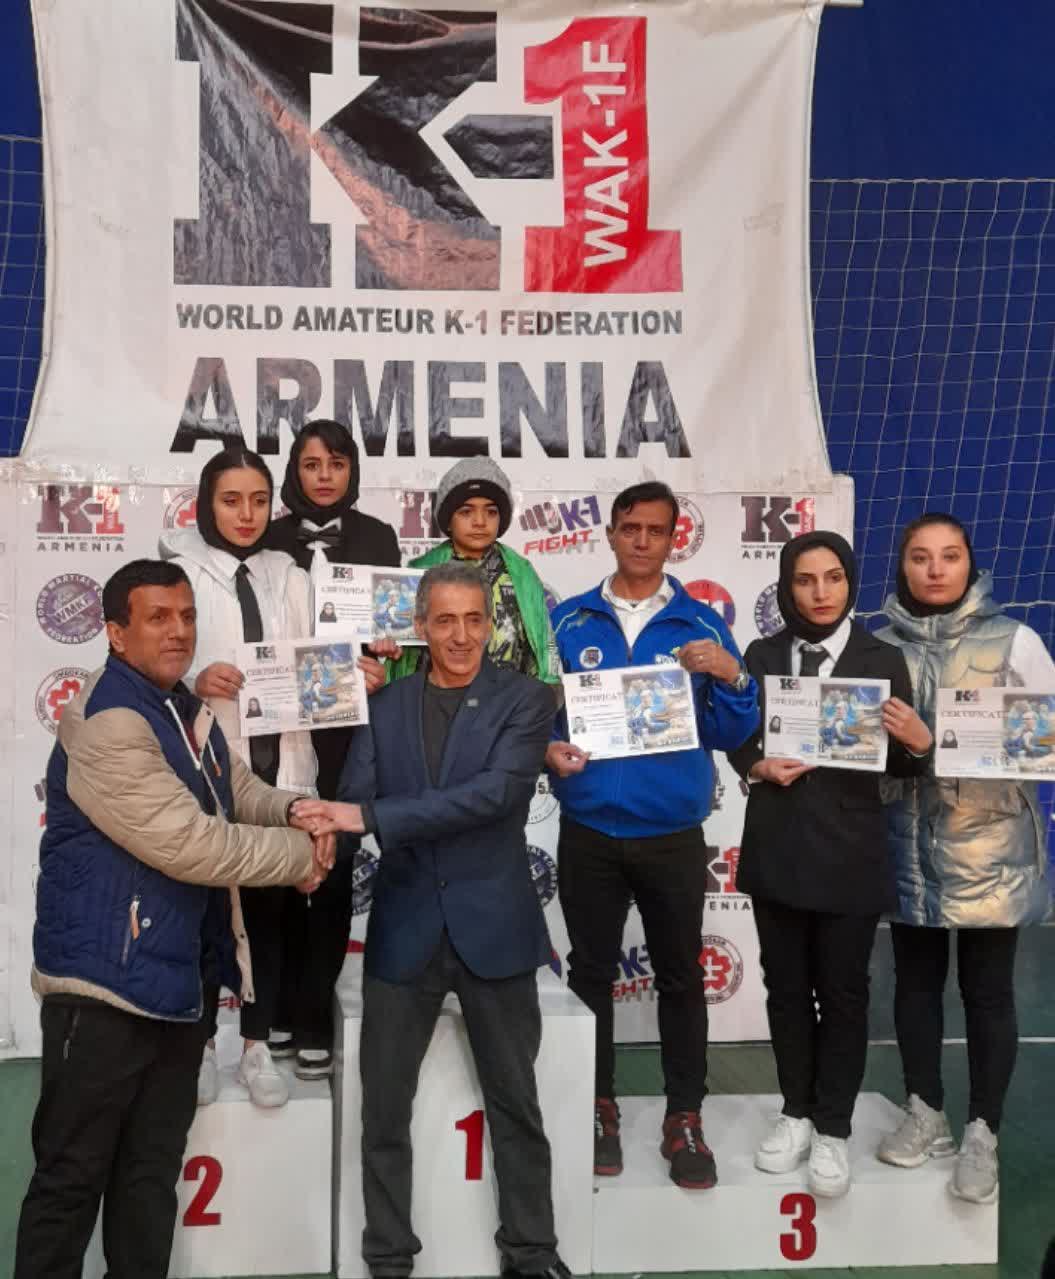 کسب عنوان قهرمانی مسابقات بین المللی کیک بوکسینگ k1 در ارمنستان توسط تیم منتخب کیک بوکسینگ با مربی کاشانی